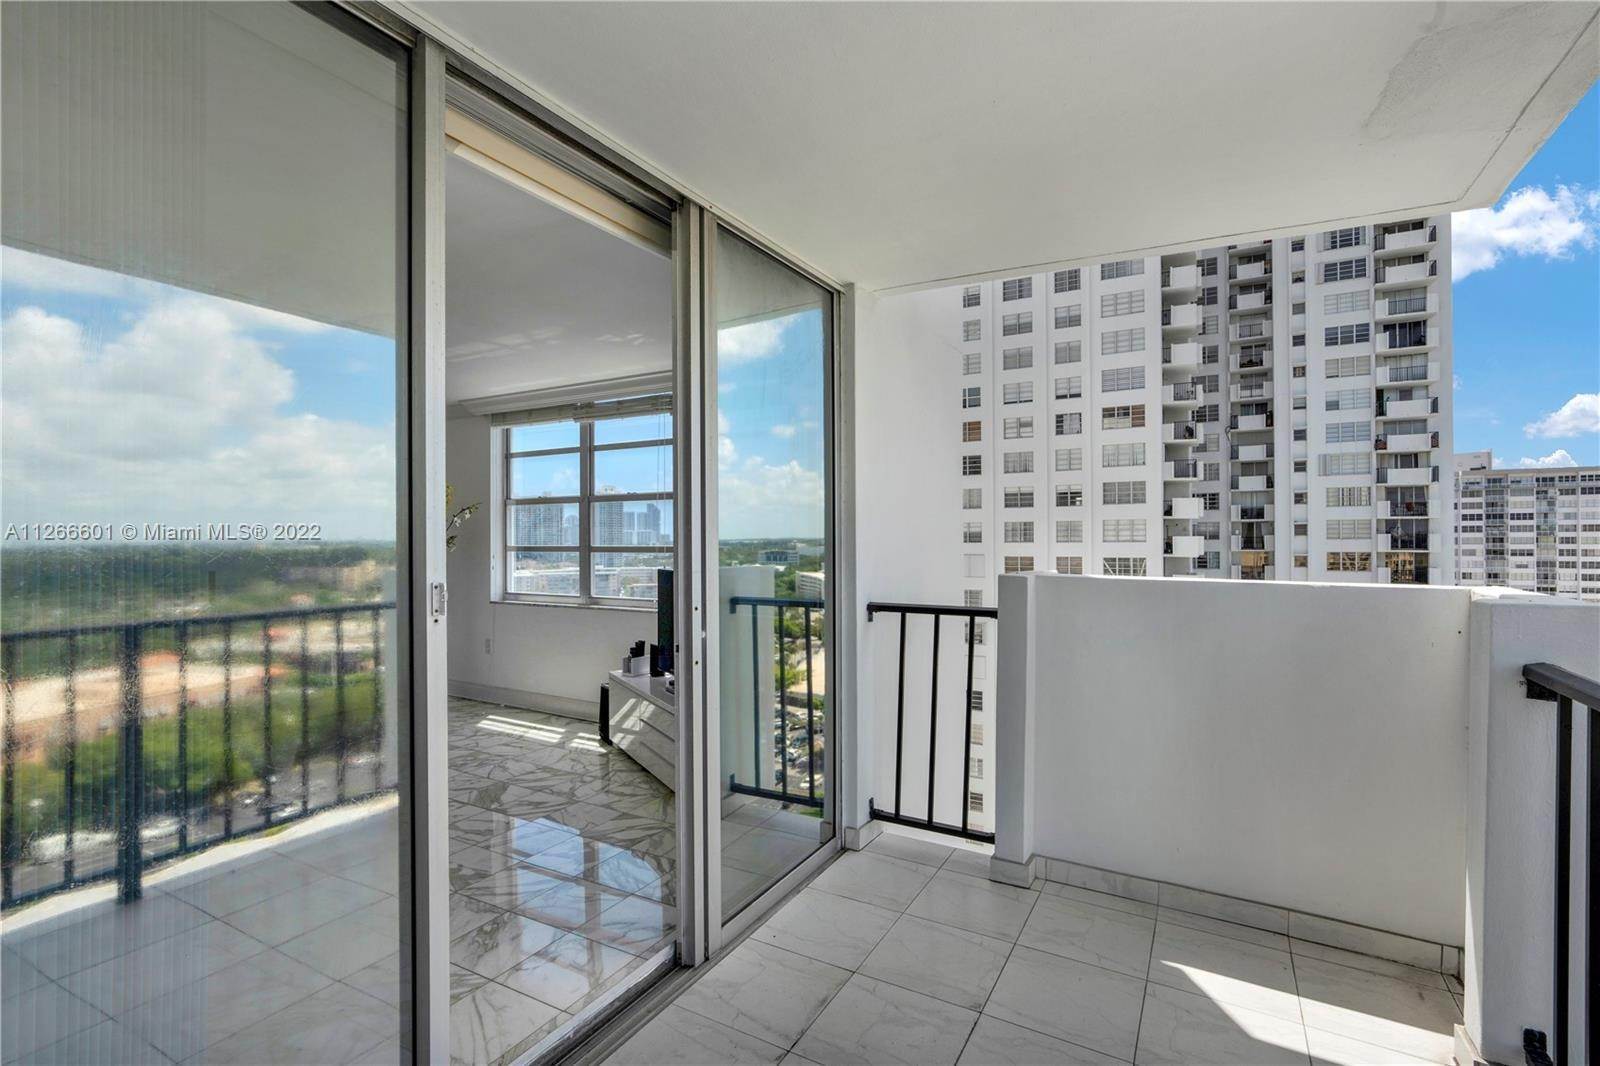 28. Condominium for Sale at Aventura, FL 33160